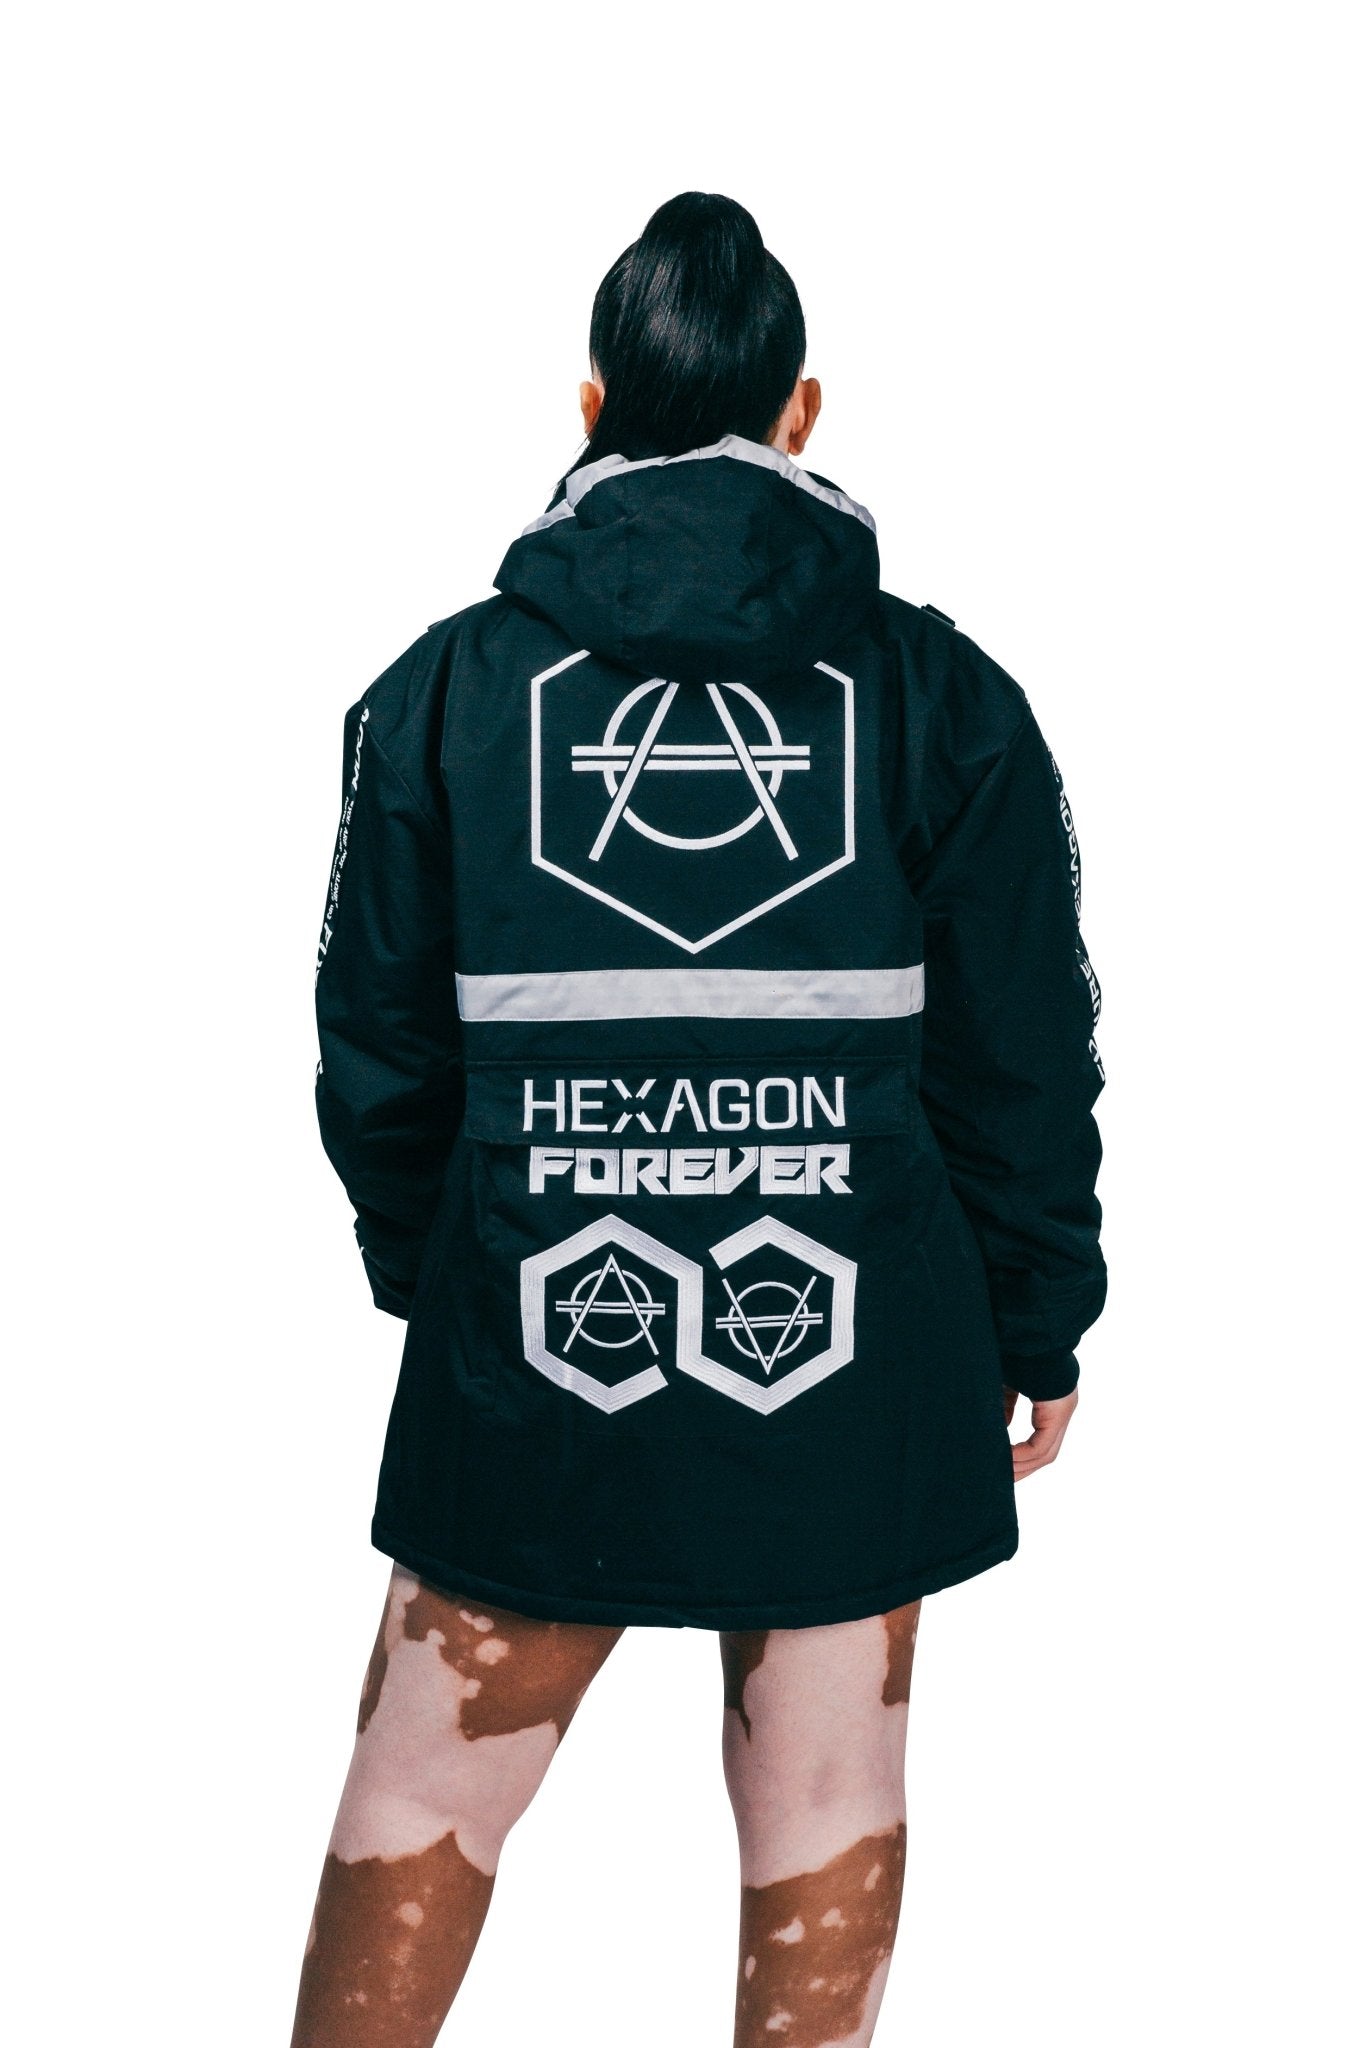 Hexagon winter jacket - HEXAGON - Don Diablo - Hexagon